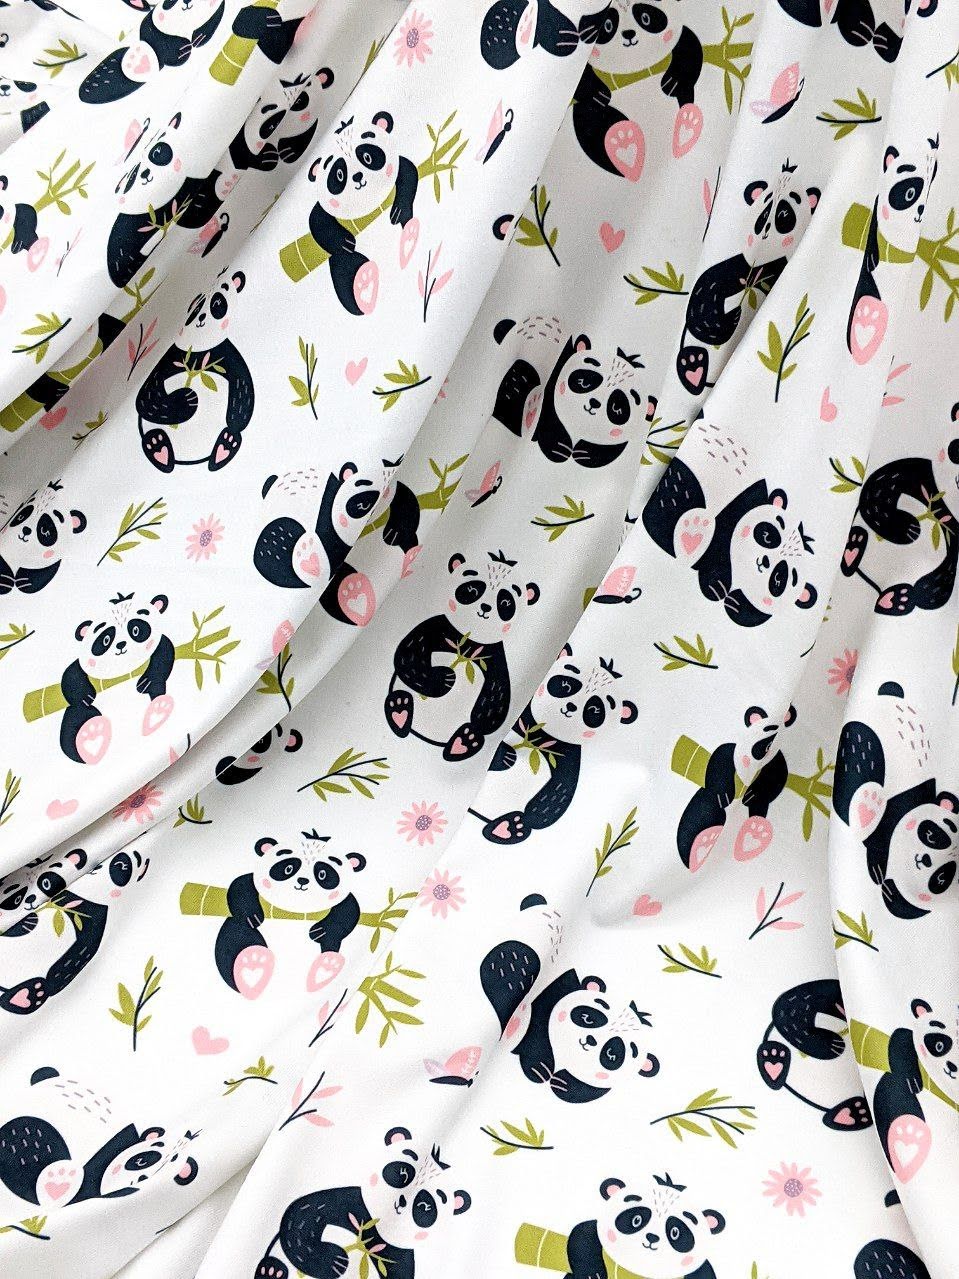 Jax & Molly's panda fabric for dog pajamas